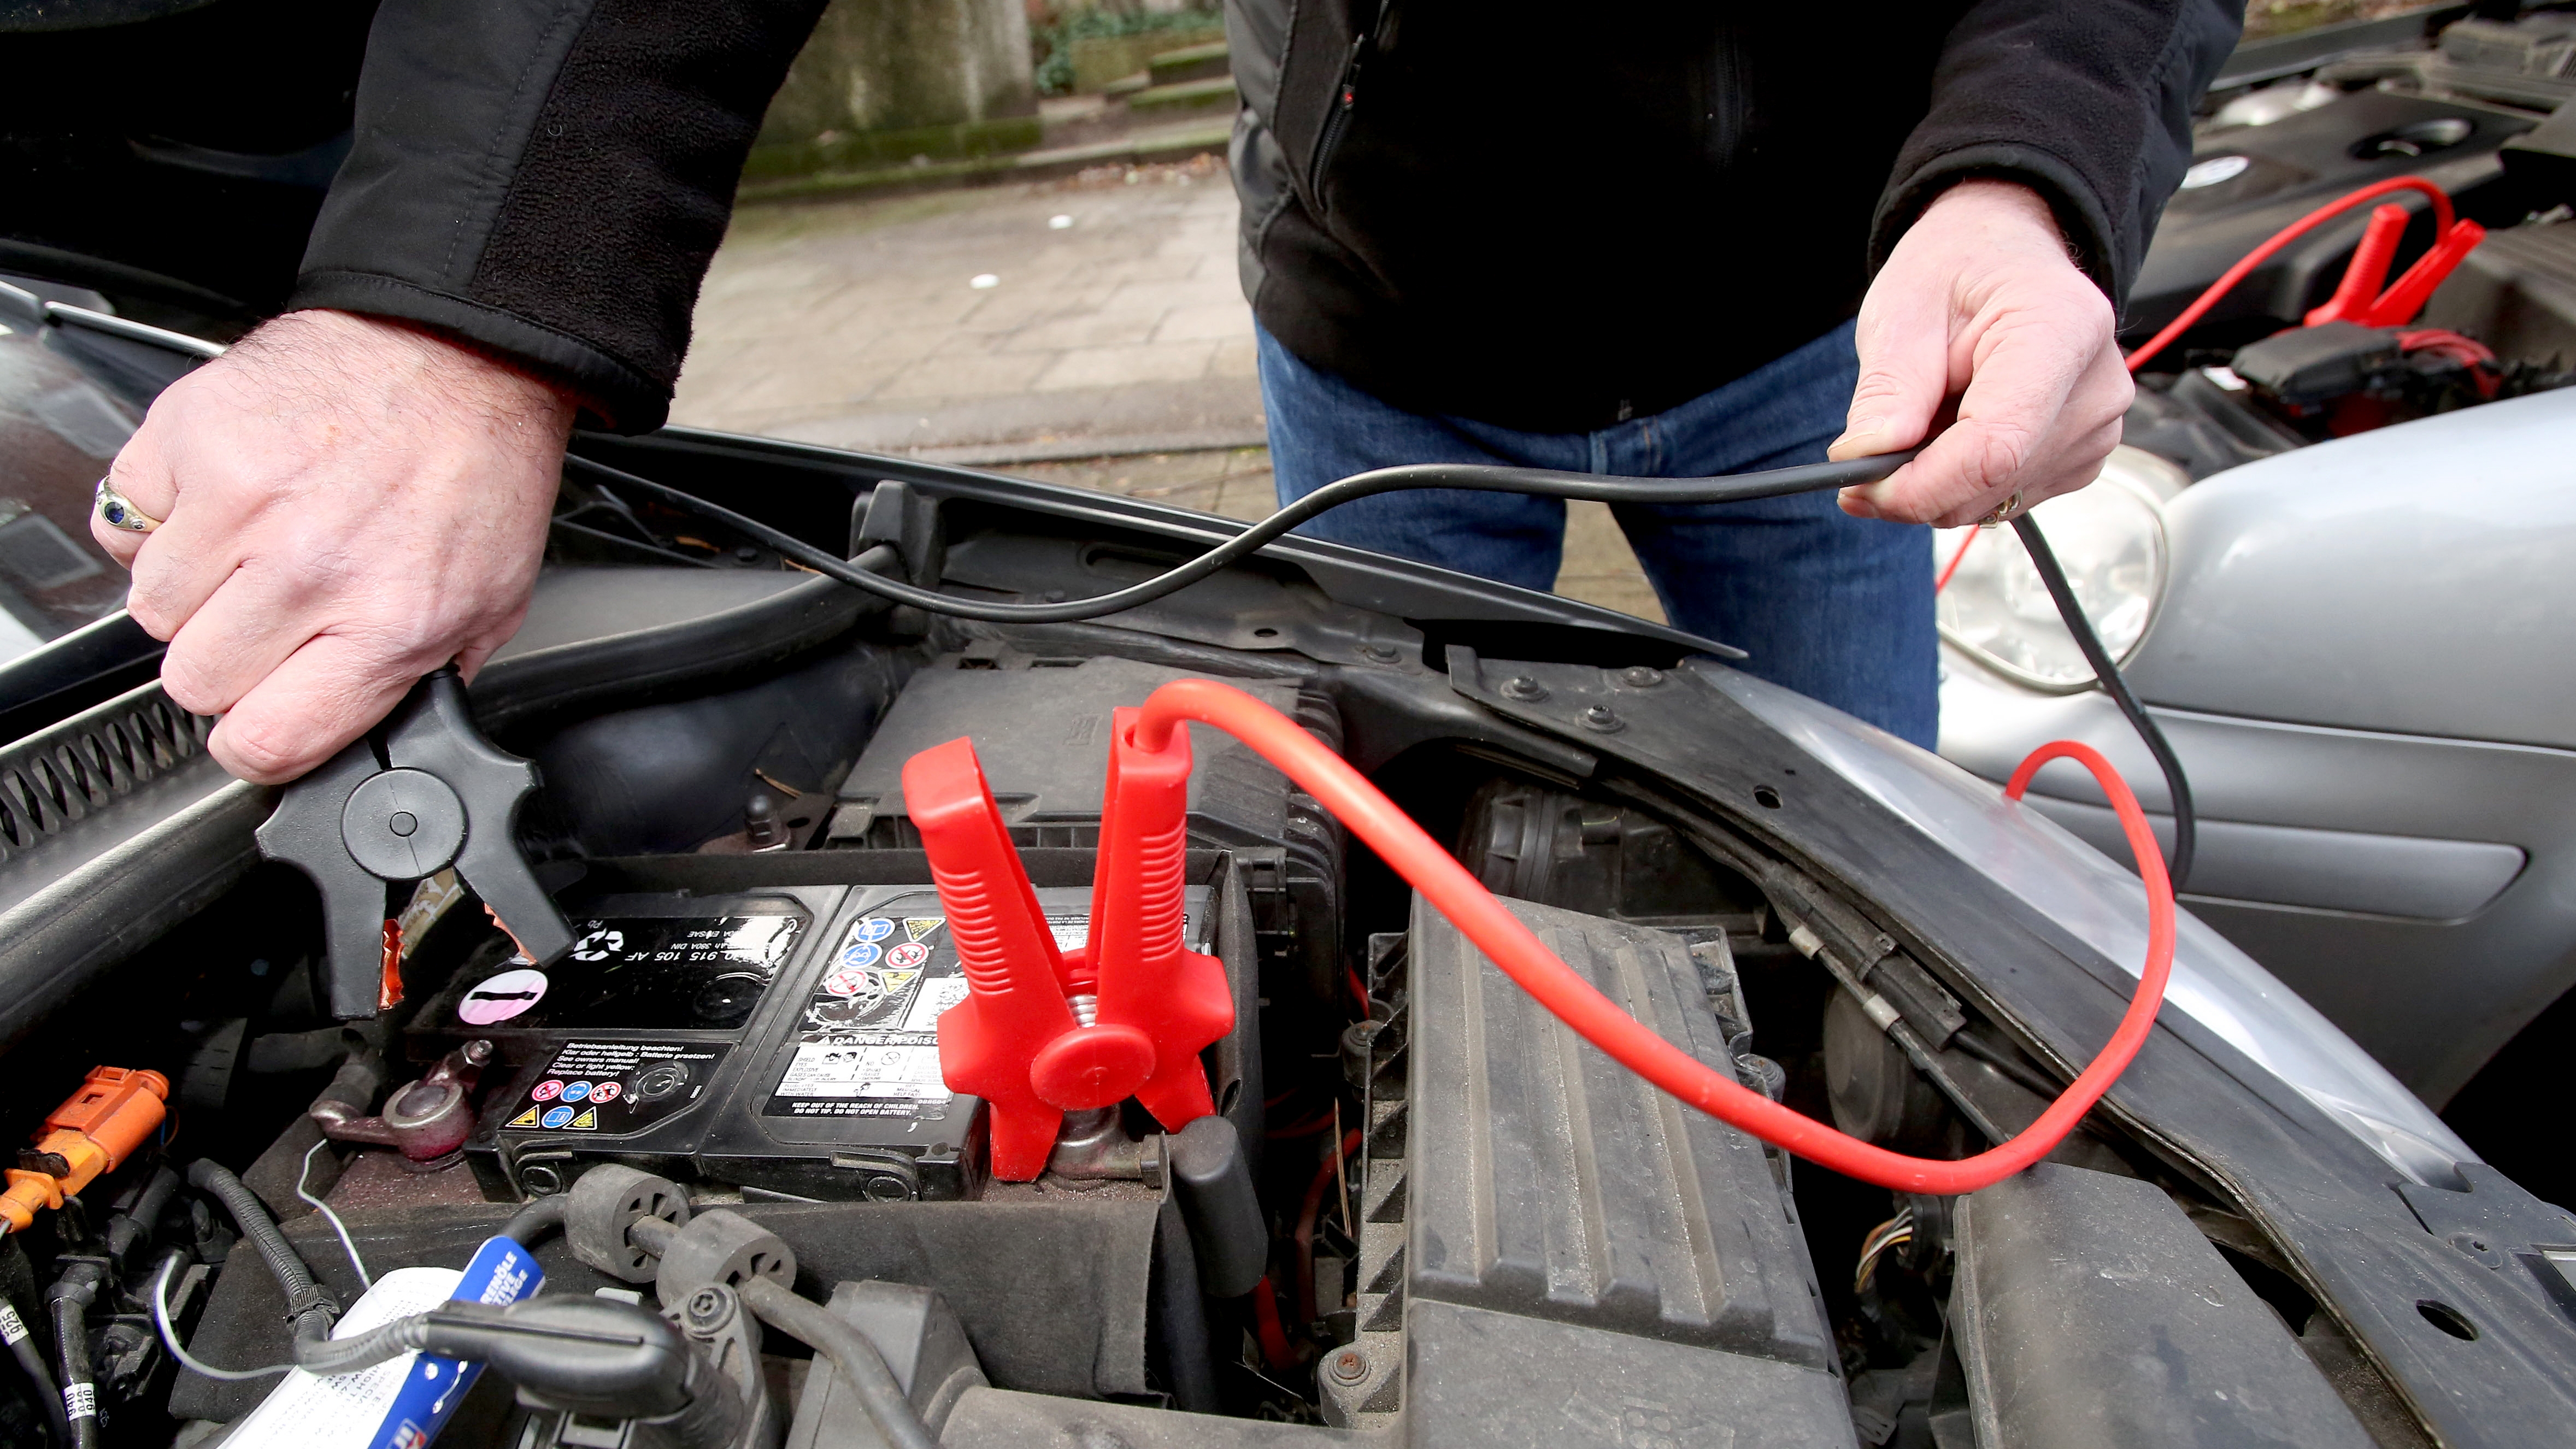 Frostschutz, Batterie, Reifen: Zehn Tipps für ein winterfestes Auto